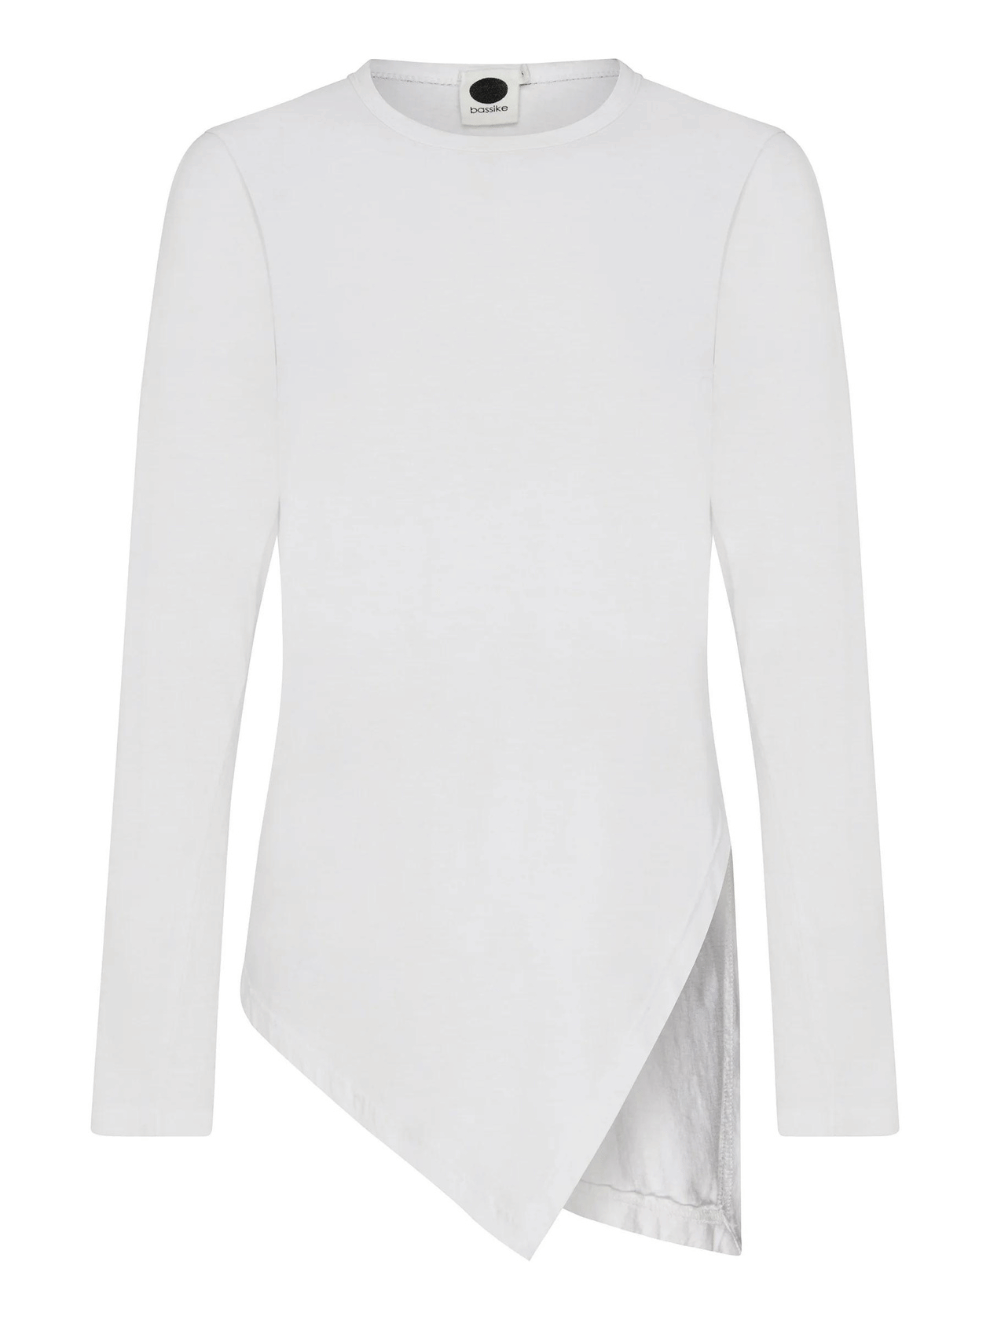 Asymmetric Split Long Sleeve T-Shirt in White